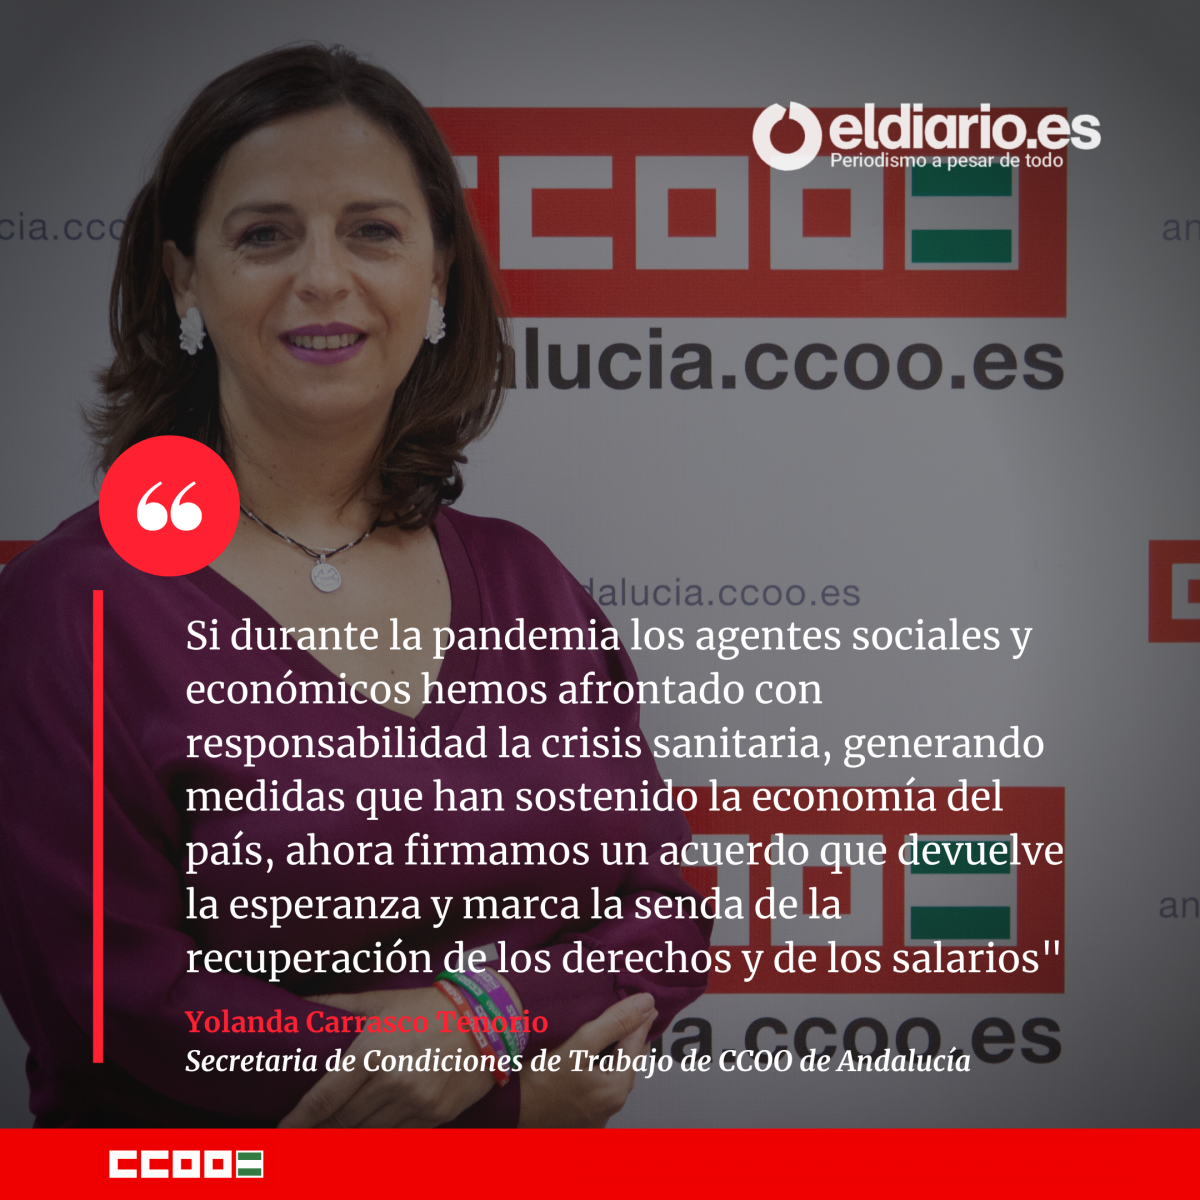 Yolanda Carrasco, secretaria de Condiciones de Trabajo de CCOO de Andalucía